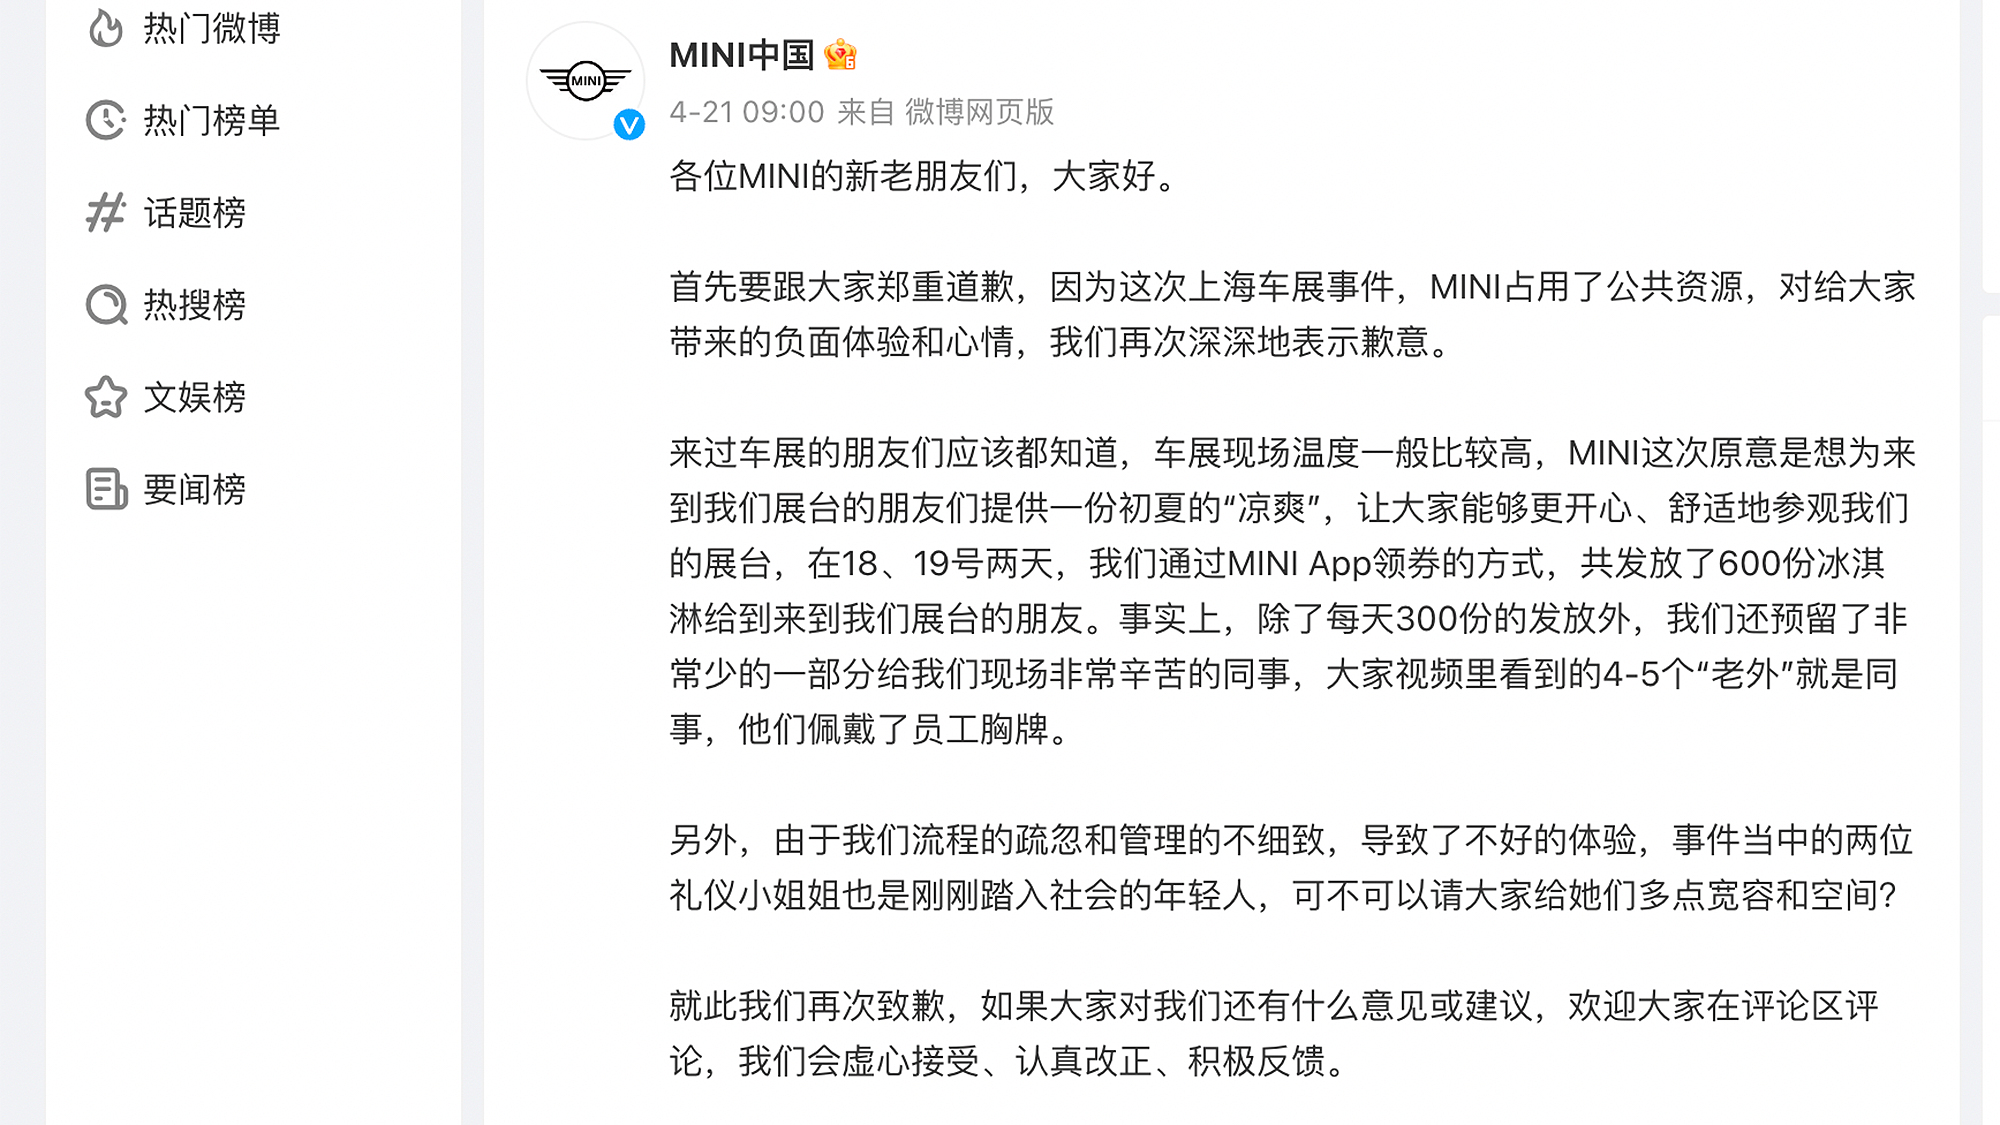 MINI中國很快出面道歉，然而網民們多數並不買單，少數較為理性的聲音也被埋沒在無數留言中。